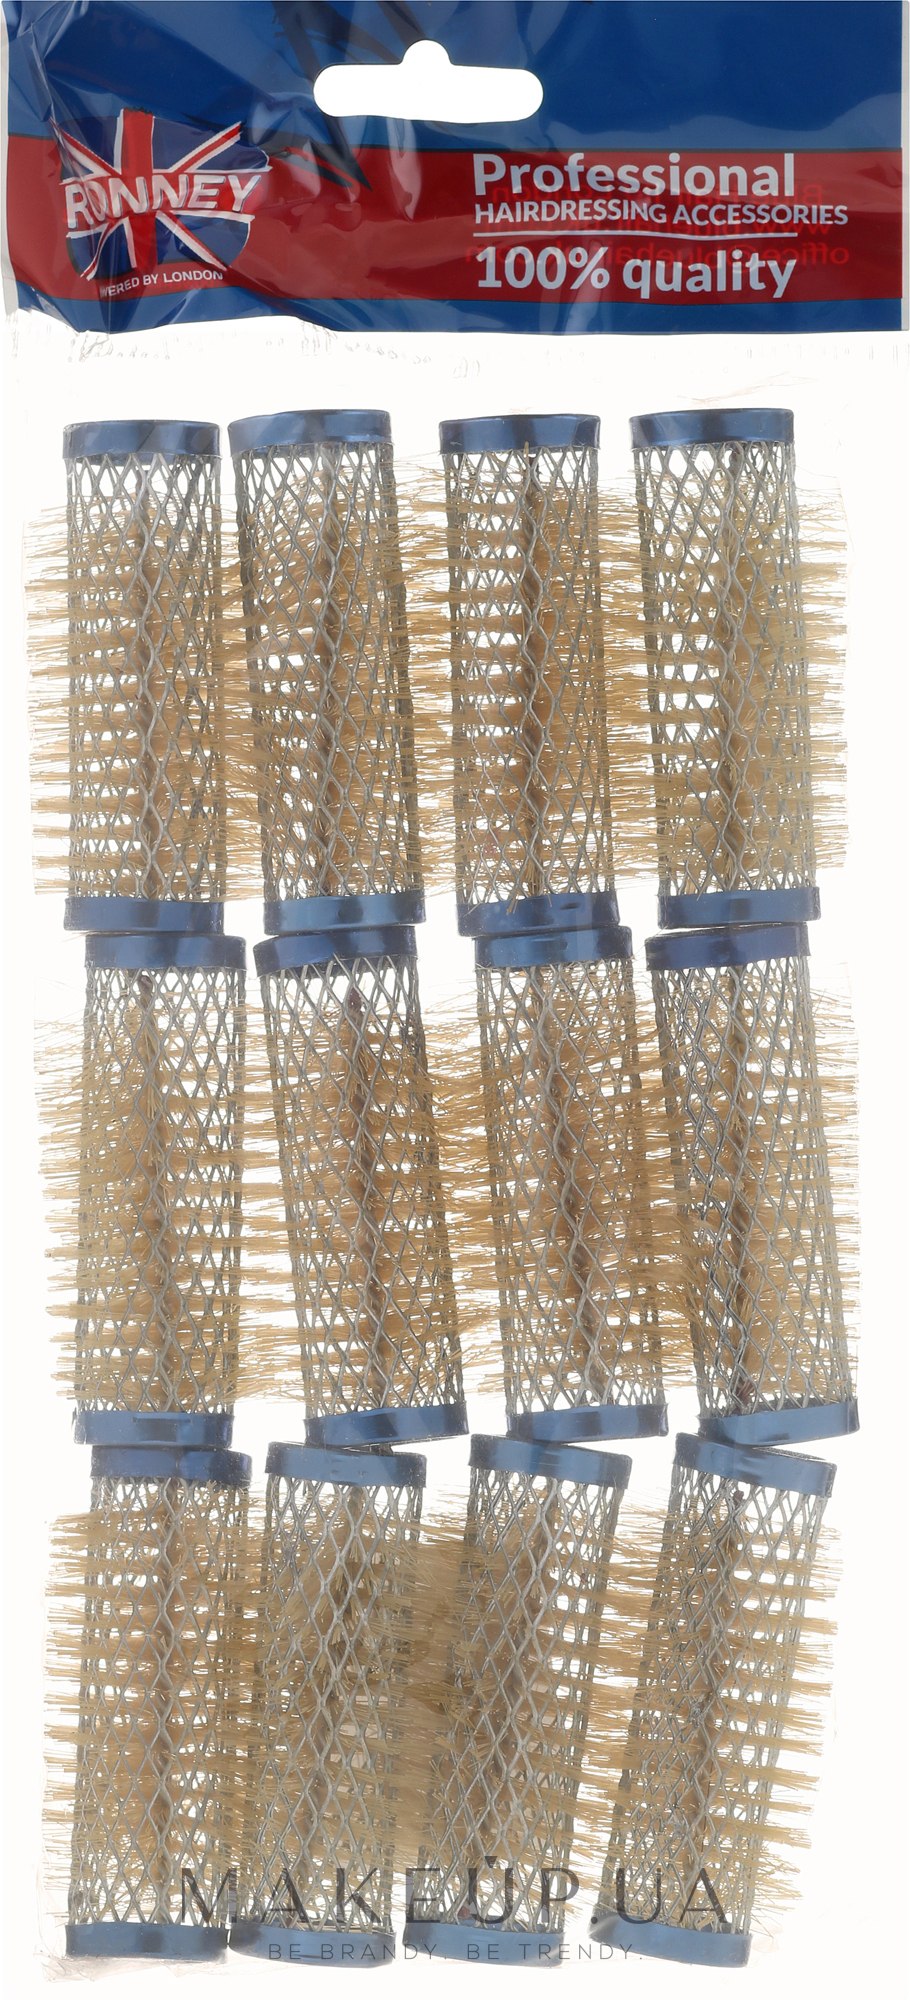 Бігуді 21/63 мм, сині - Ronney Wire Curlers — фото 12шт